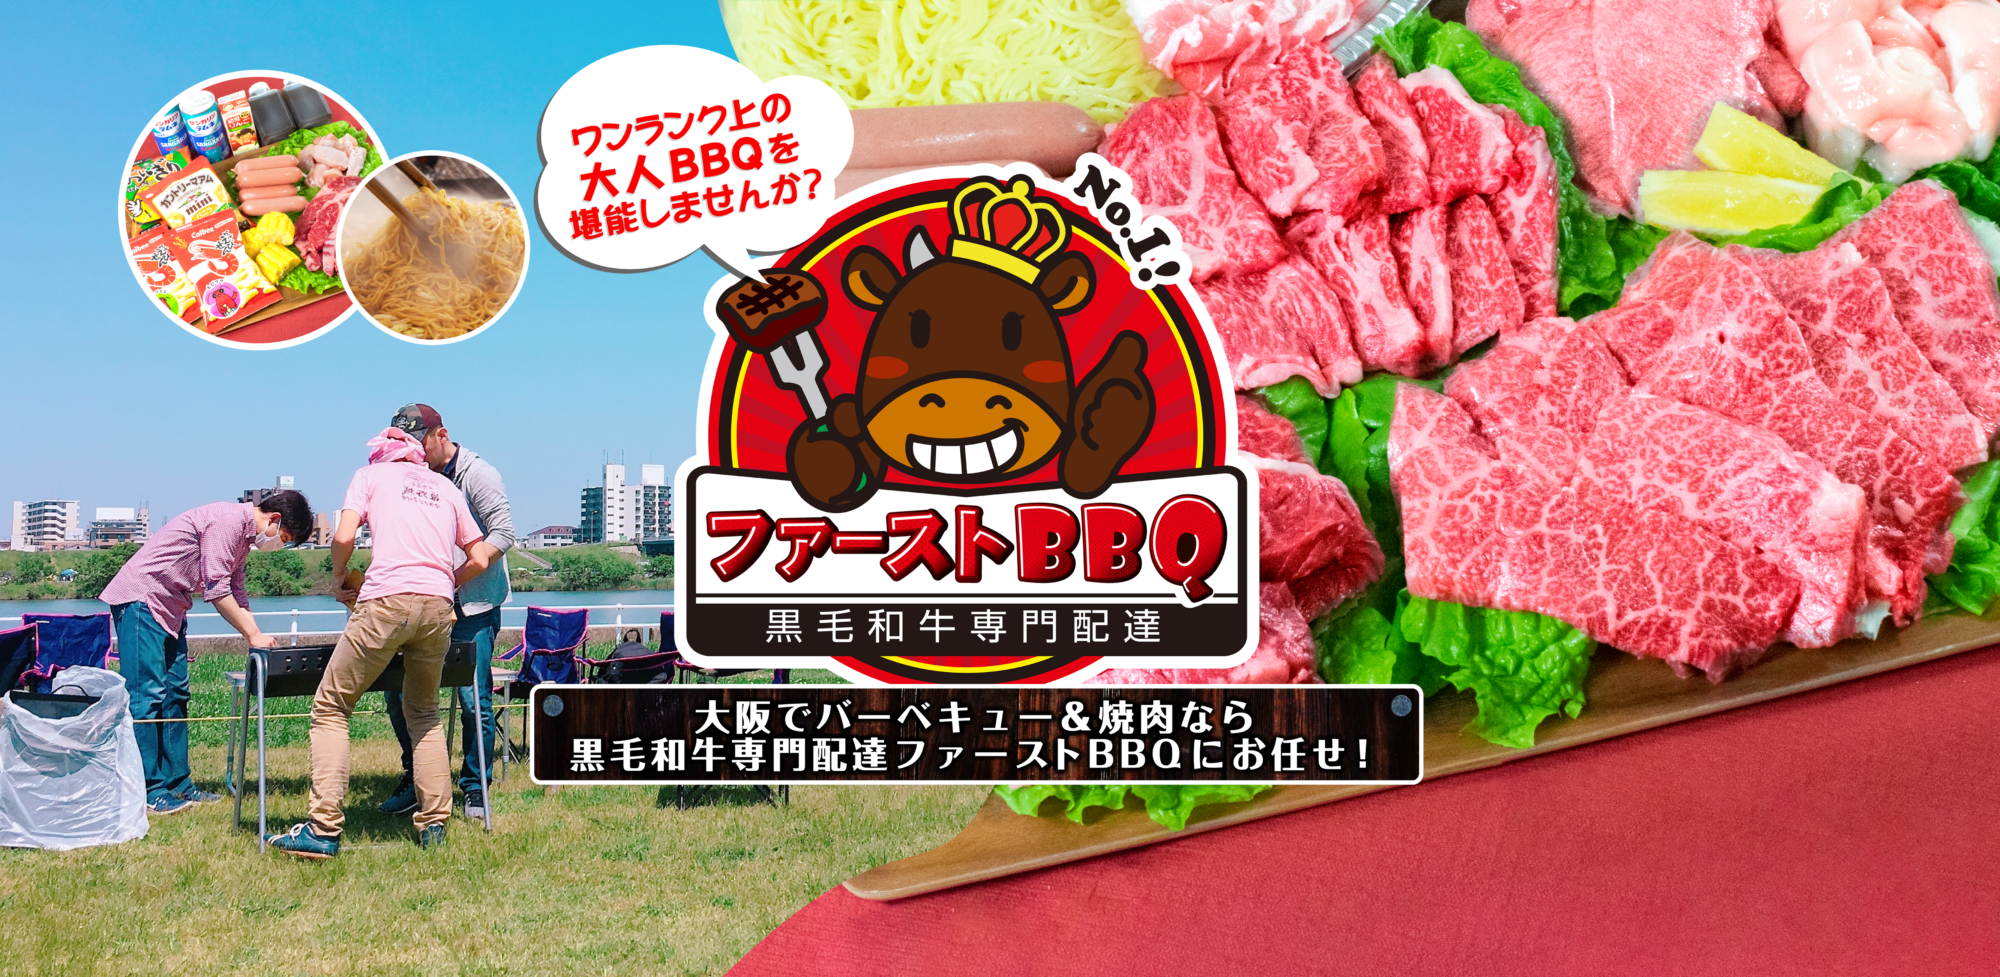 大阪市でバーベキュー 焼肉の食材をお届け 黒毛和牛専門配達ファーストbbq